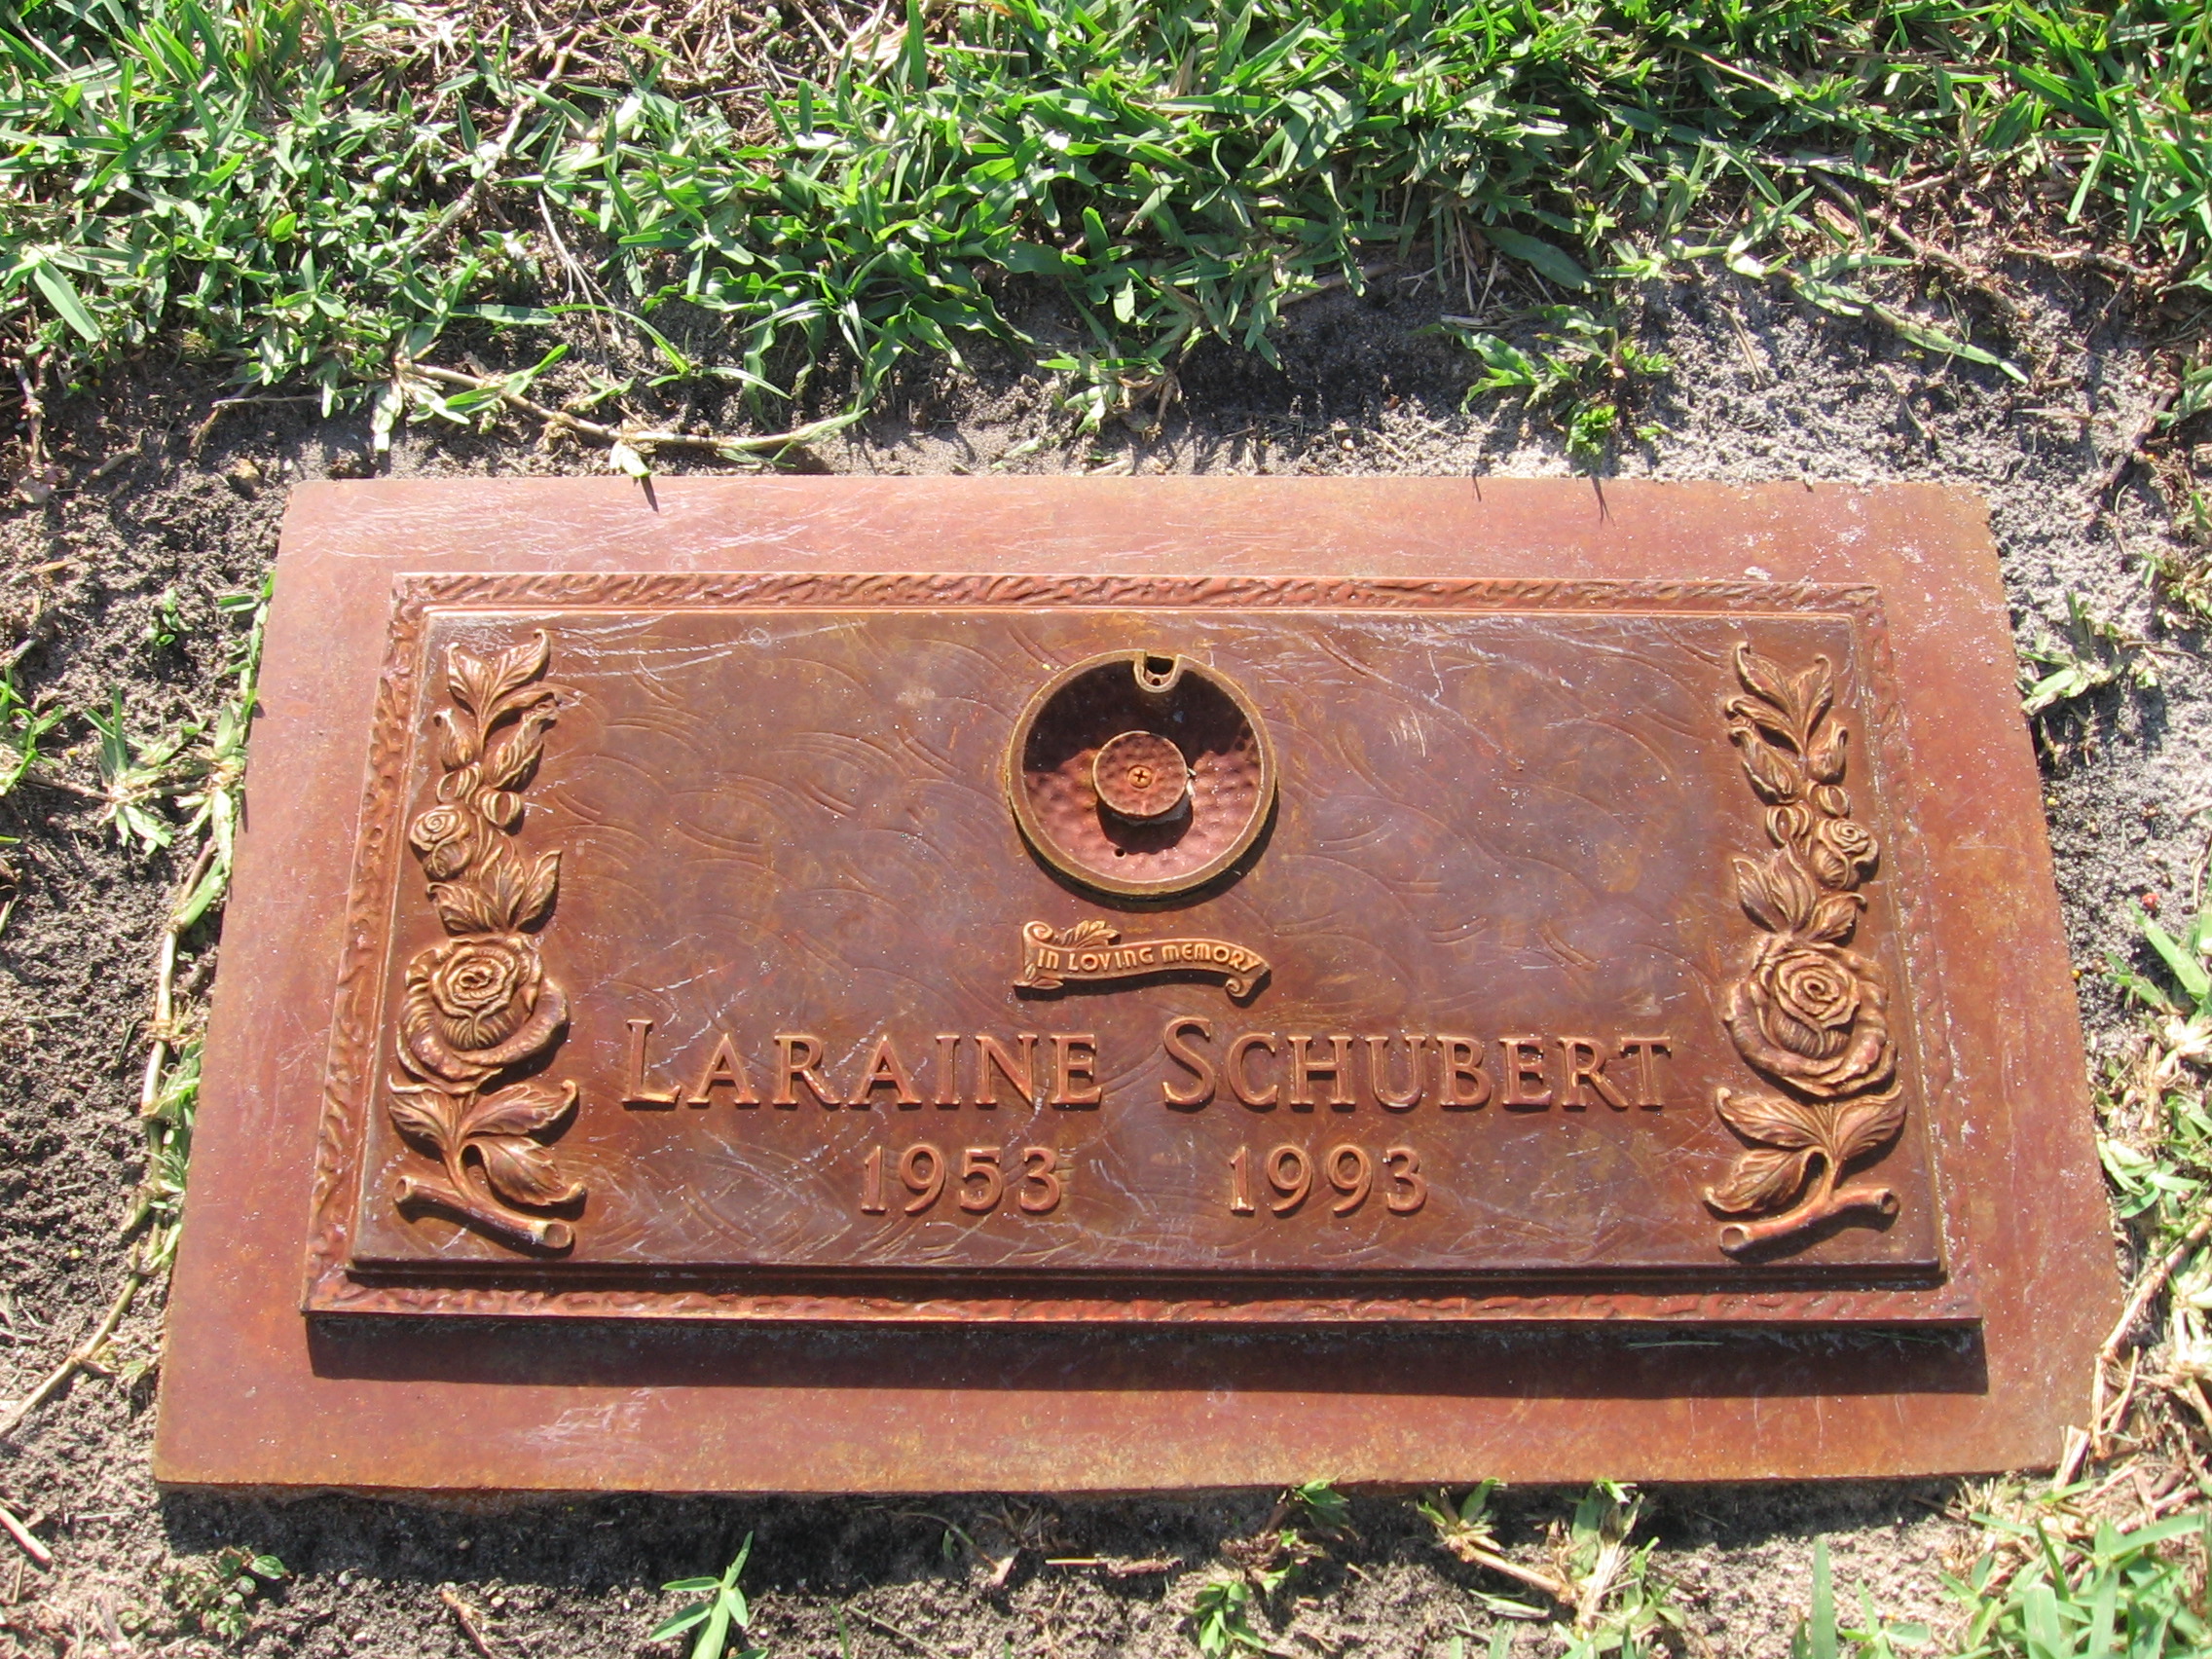 Laraine Schubert